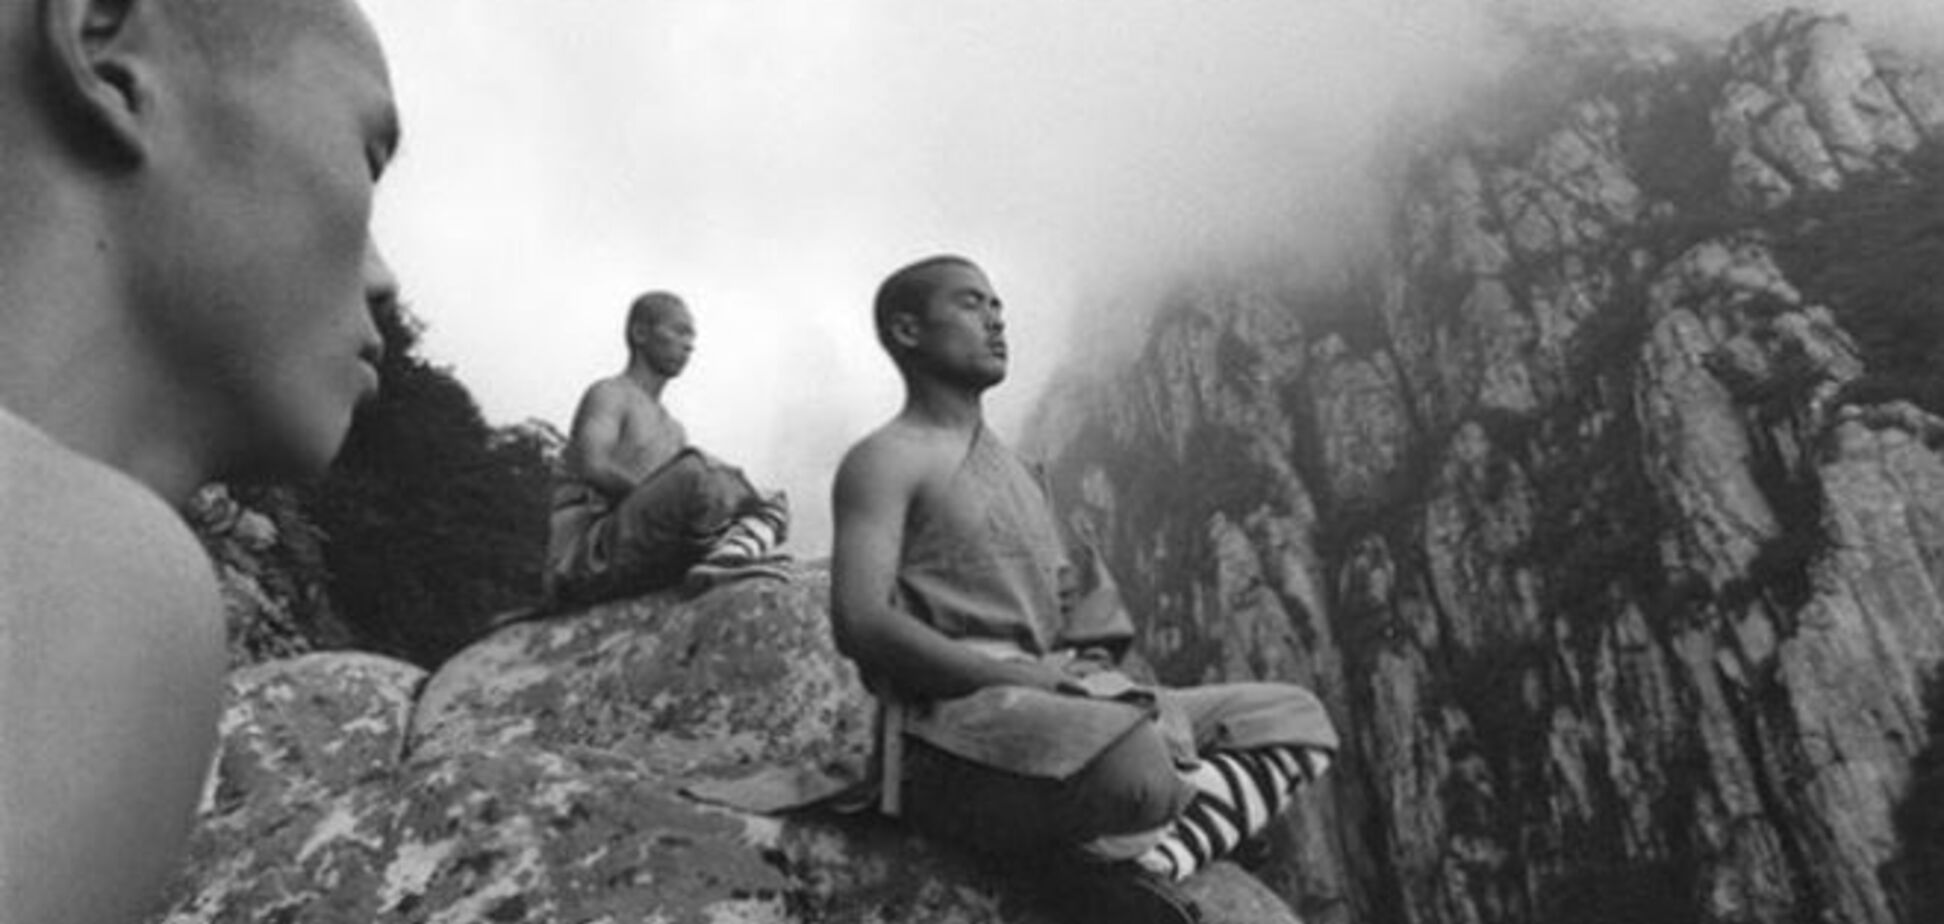 Будни монахов: умиротворенная жизнь в Шаолиньском монастыре